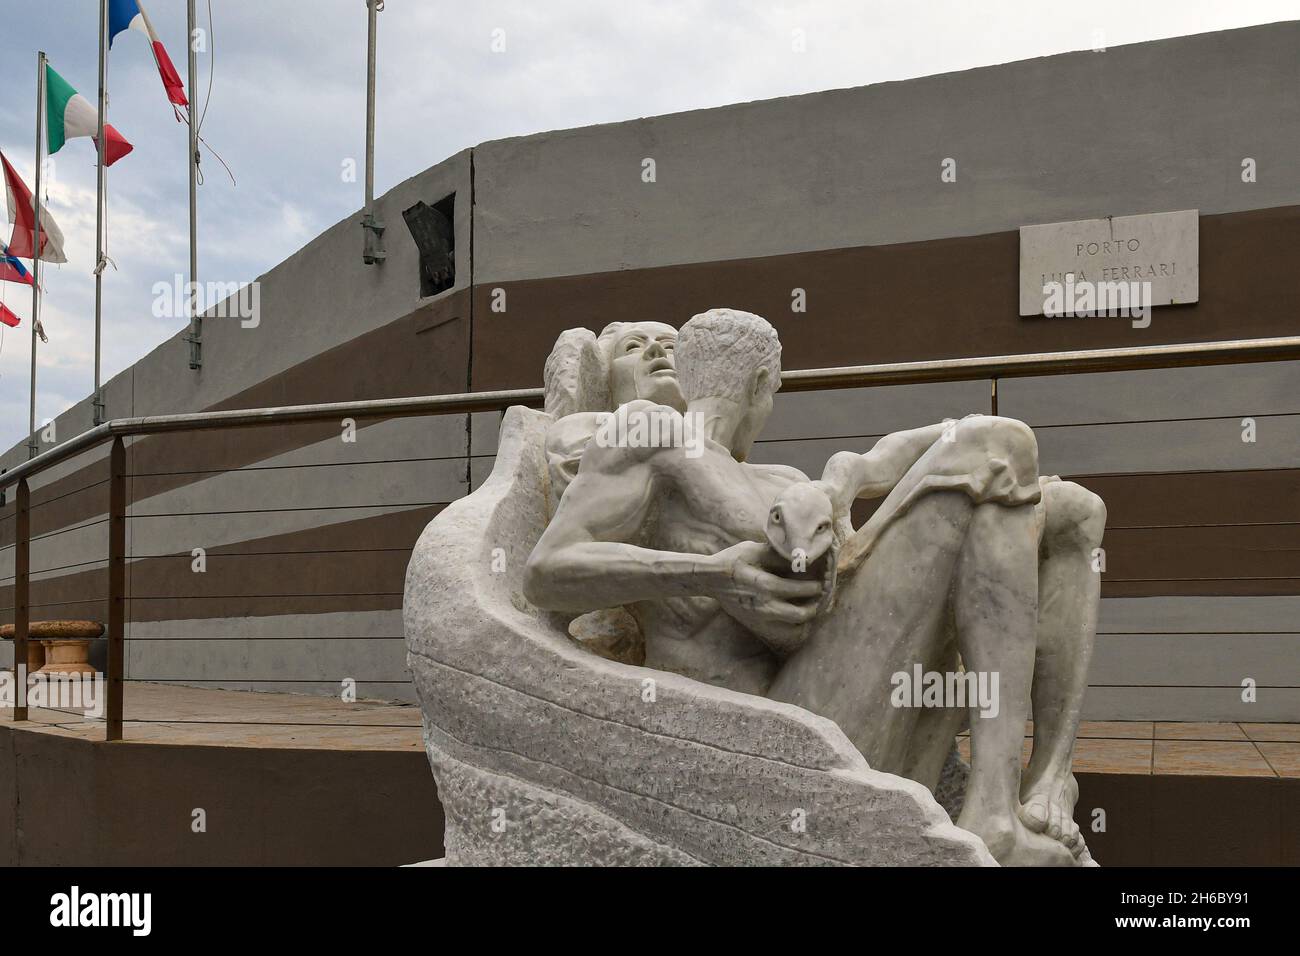 Una statua in marmo nel porto di Porto Luca Ferrari di Alassio con bandiere europee sullo sfondo, Alassio, Savona, Liguria, Italia Foto Stock